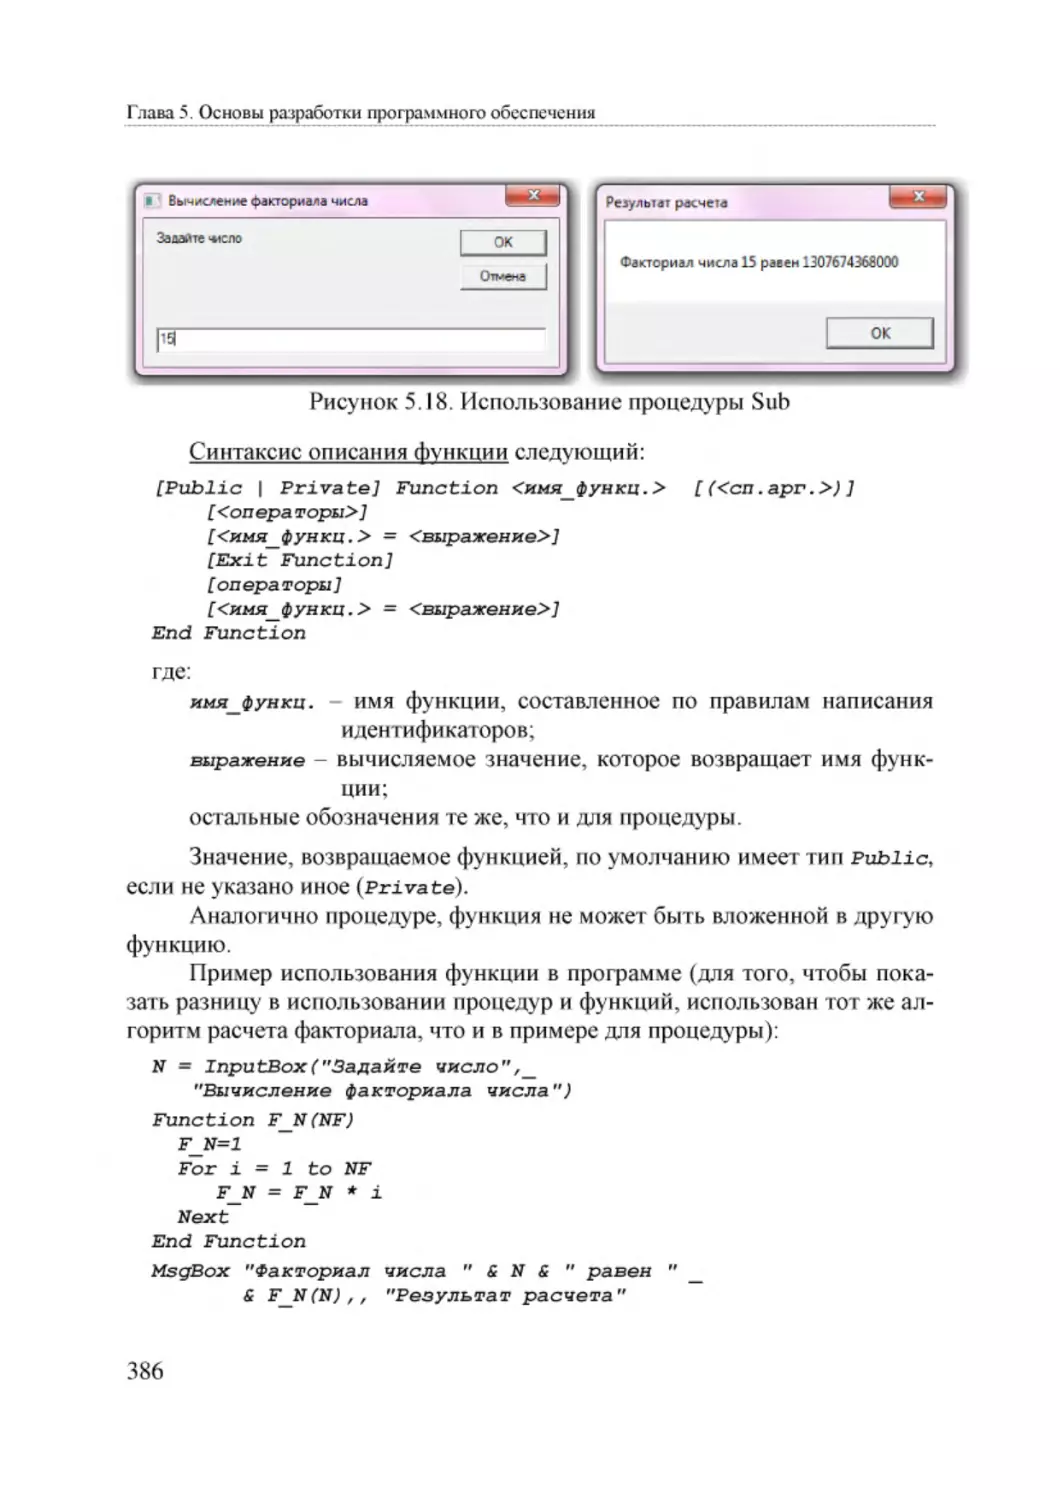 Informatika_Uchebnik_dlya_vuzov_2010 386